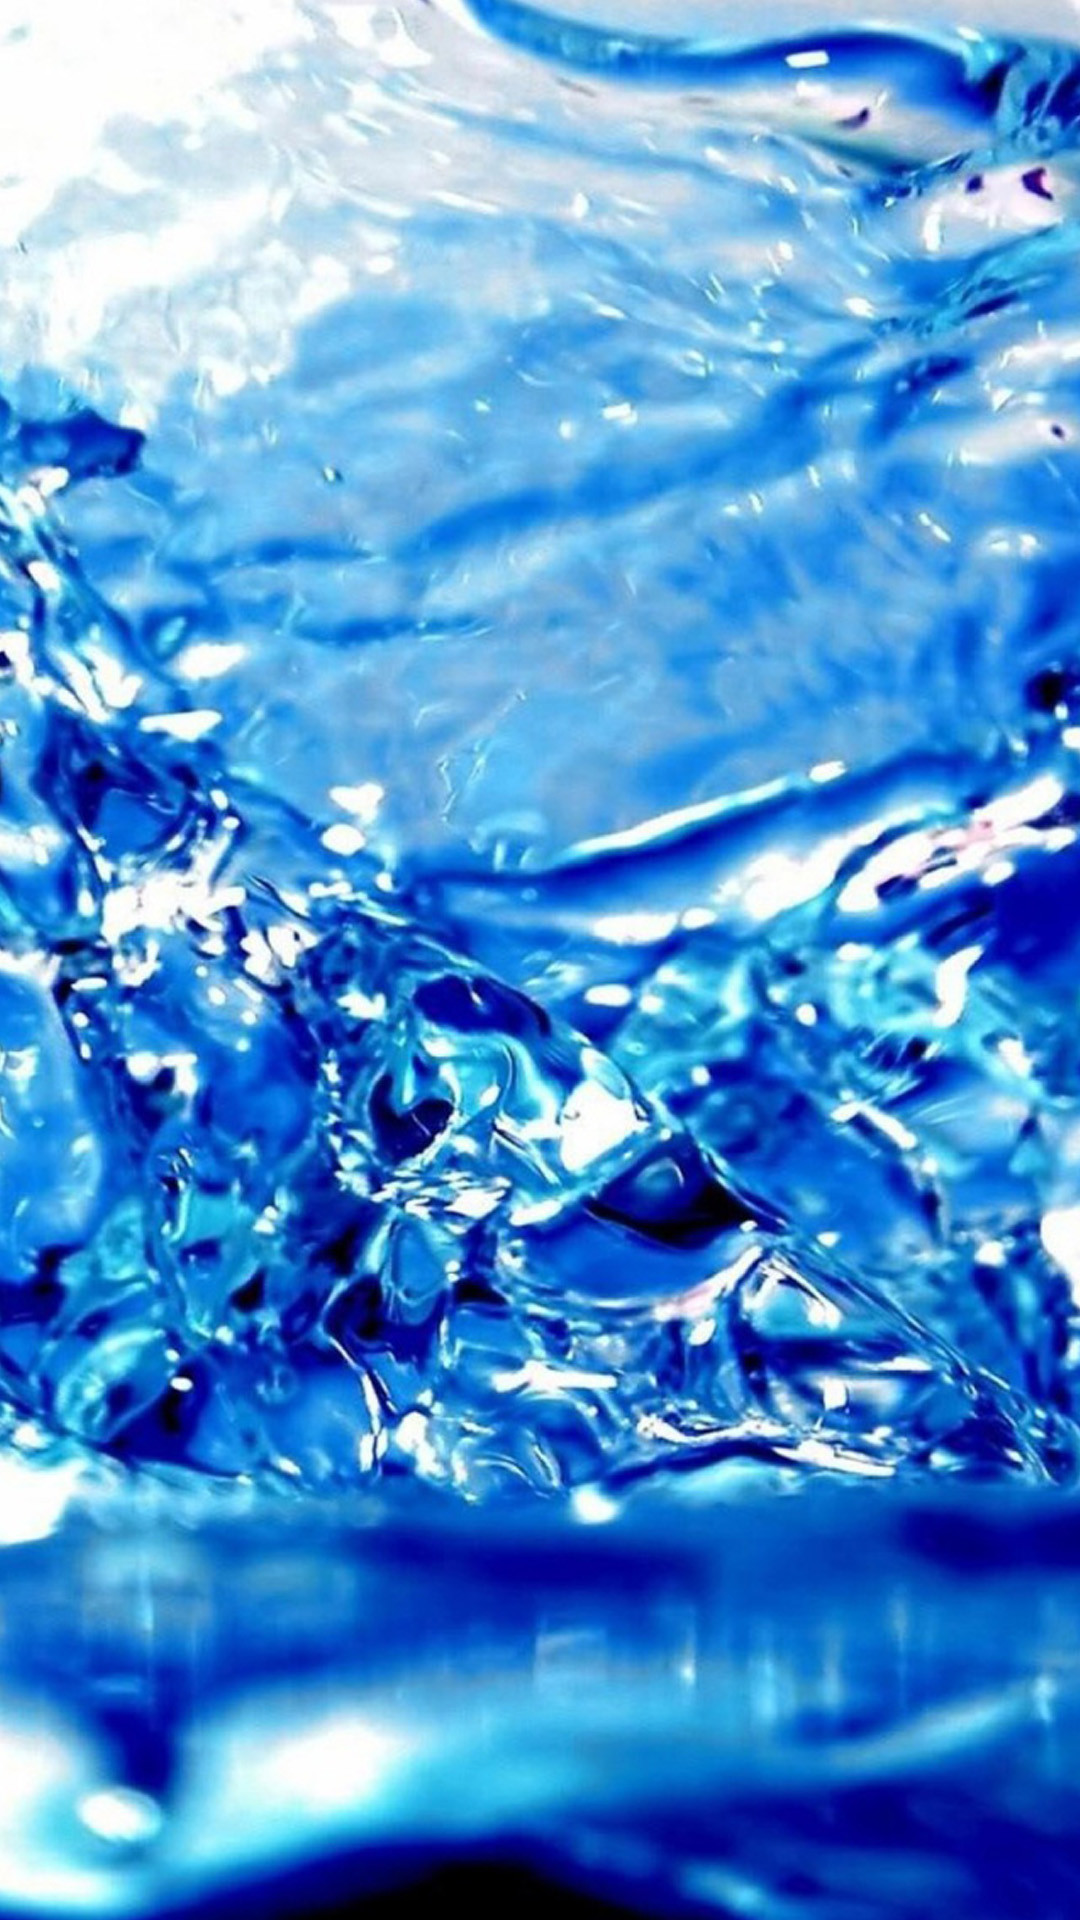 Blue Water Drops 5 S4 Wallpaper 
 Data-src /w/full/c/a/3/54097 - Background Blue Water Splash - HD Wallpaper 